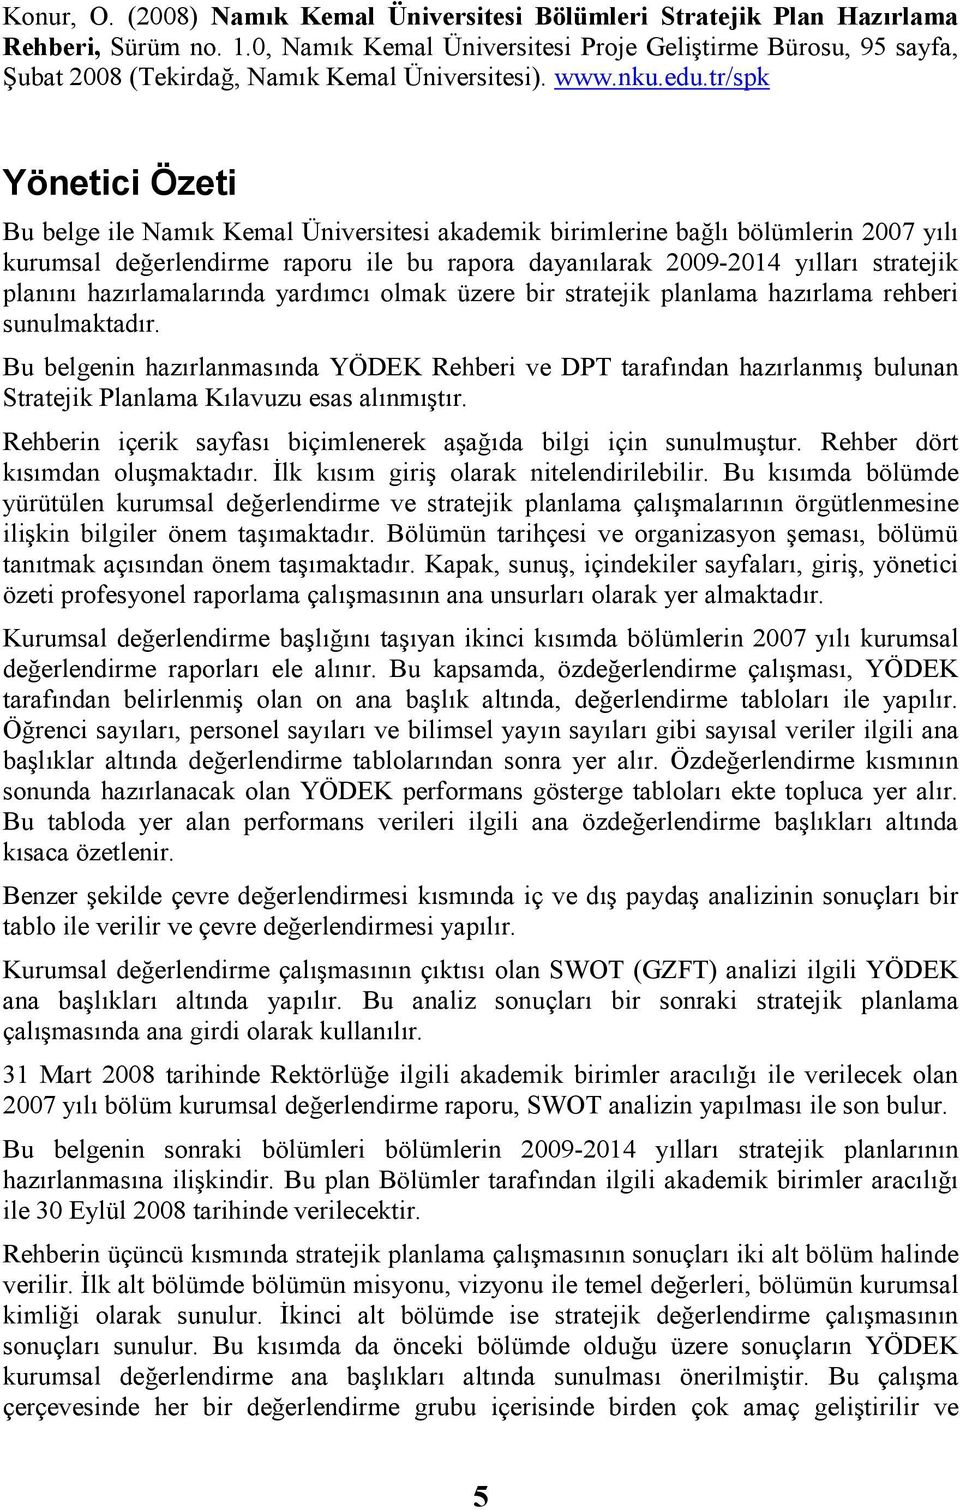 tr/spk Yönetici Özeti Bu belge ile Namık Kemal Üniversitesi mik birimlerine bağlı bölümlerin kurumsal değerlendirme raporu ile bu rapora dayanılarak 2009-2014 yılları stratejik planını